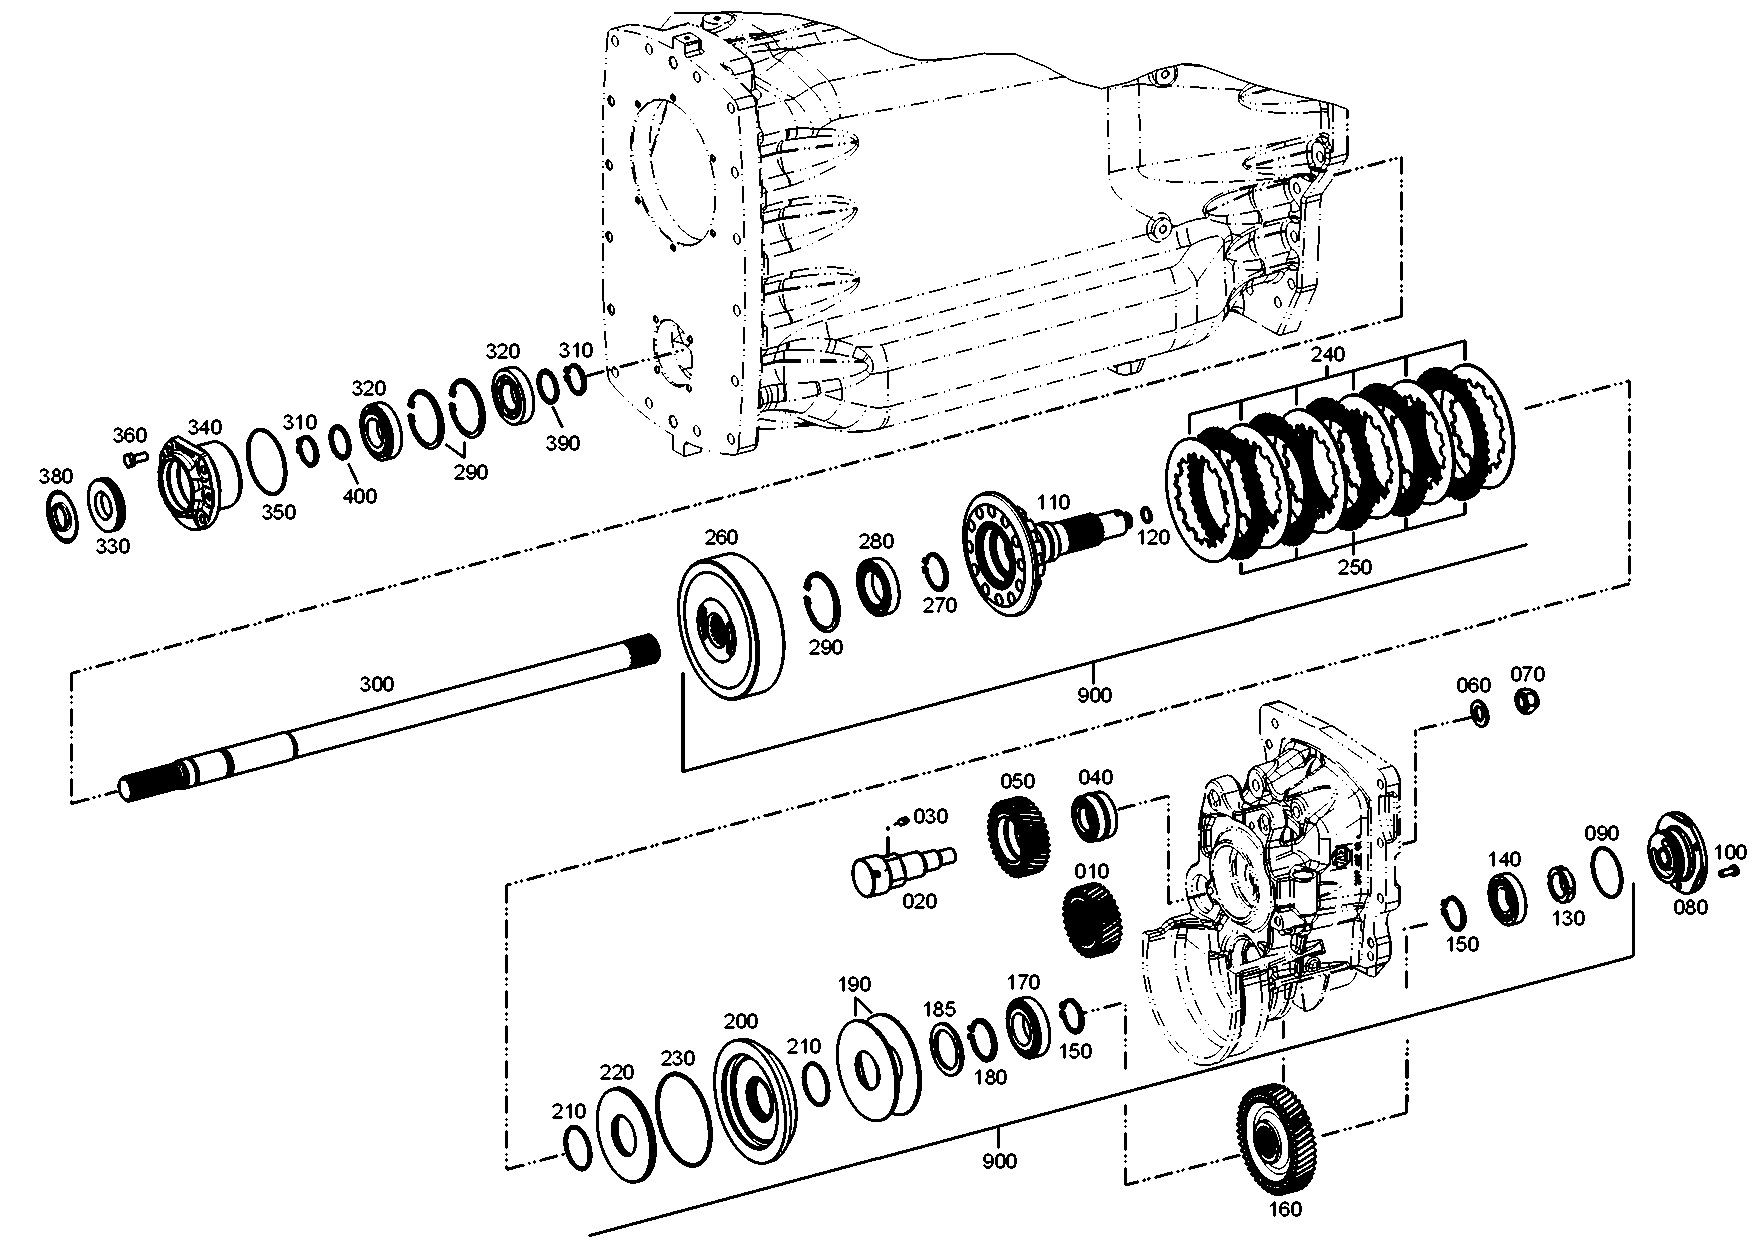 drawing for SCHOPF MASCHINENBAU GMBH 89346 - ROLLER BEARING (figure 3)